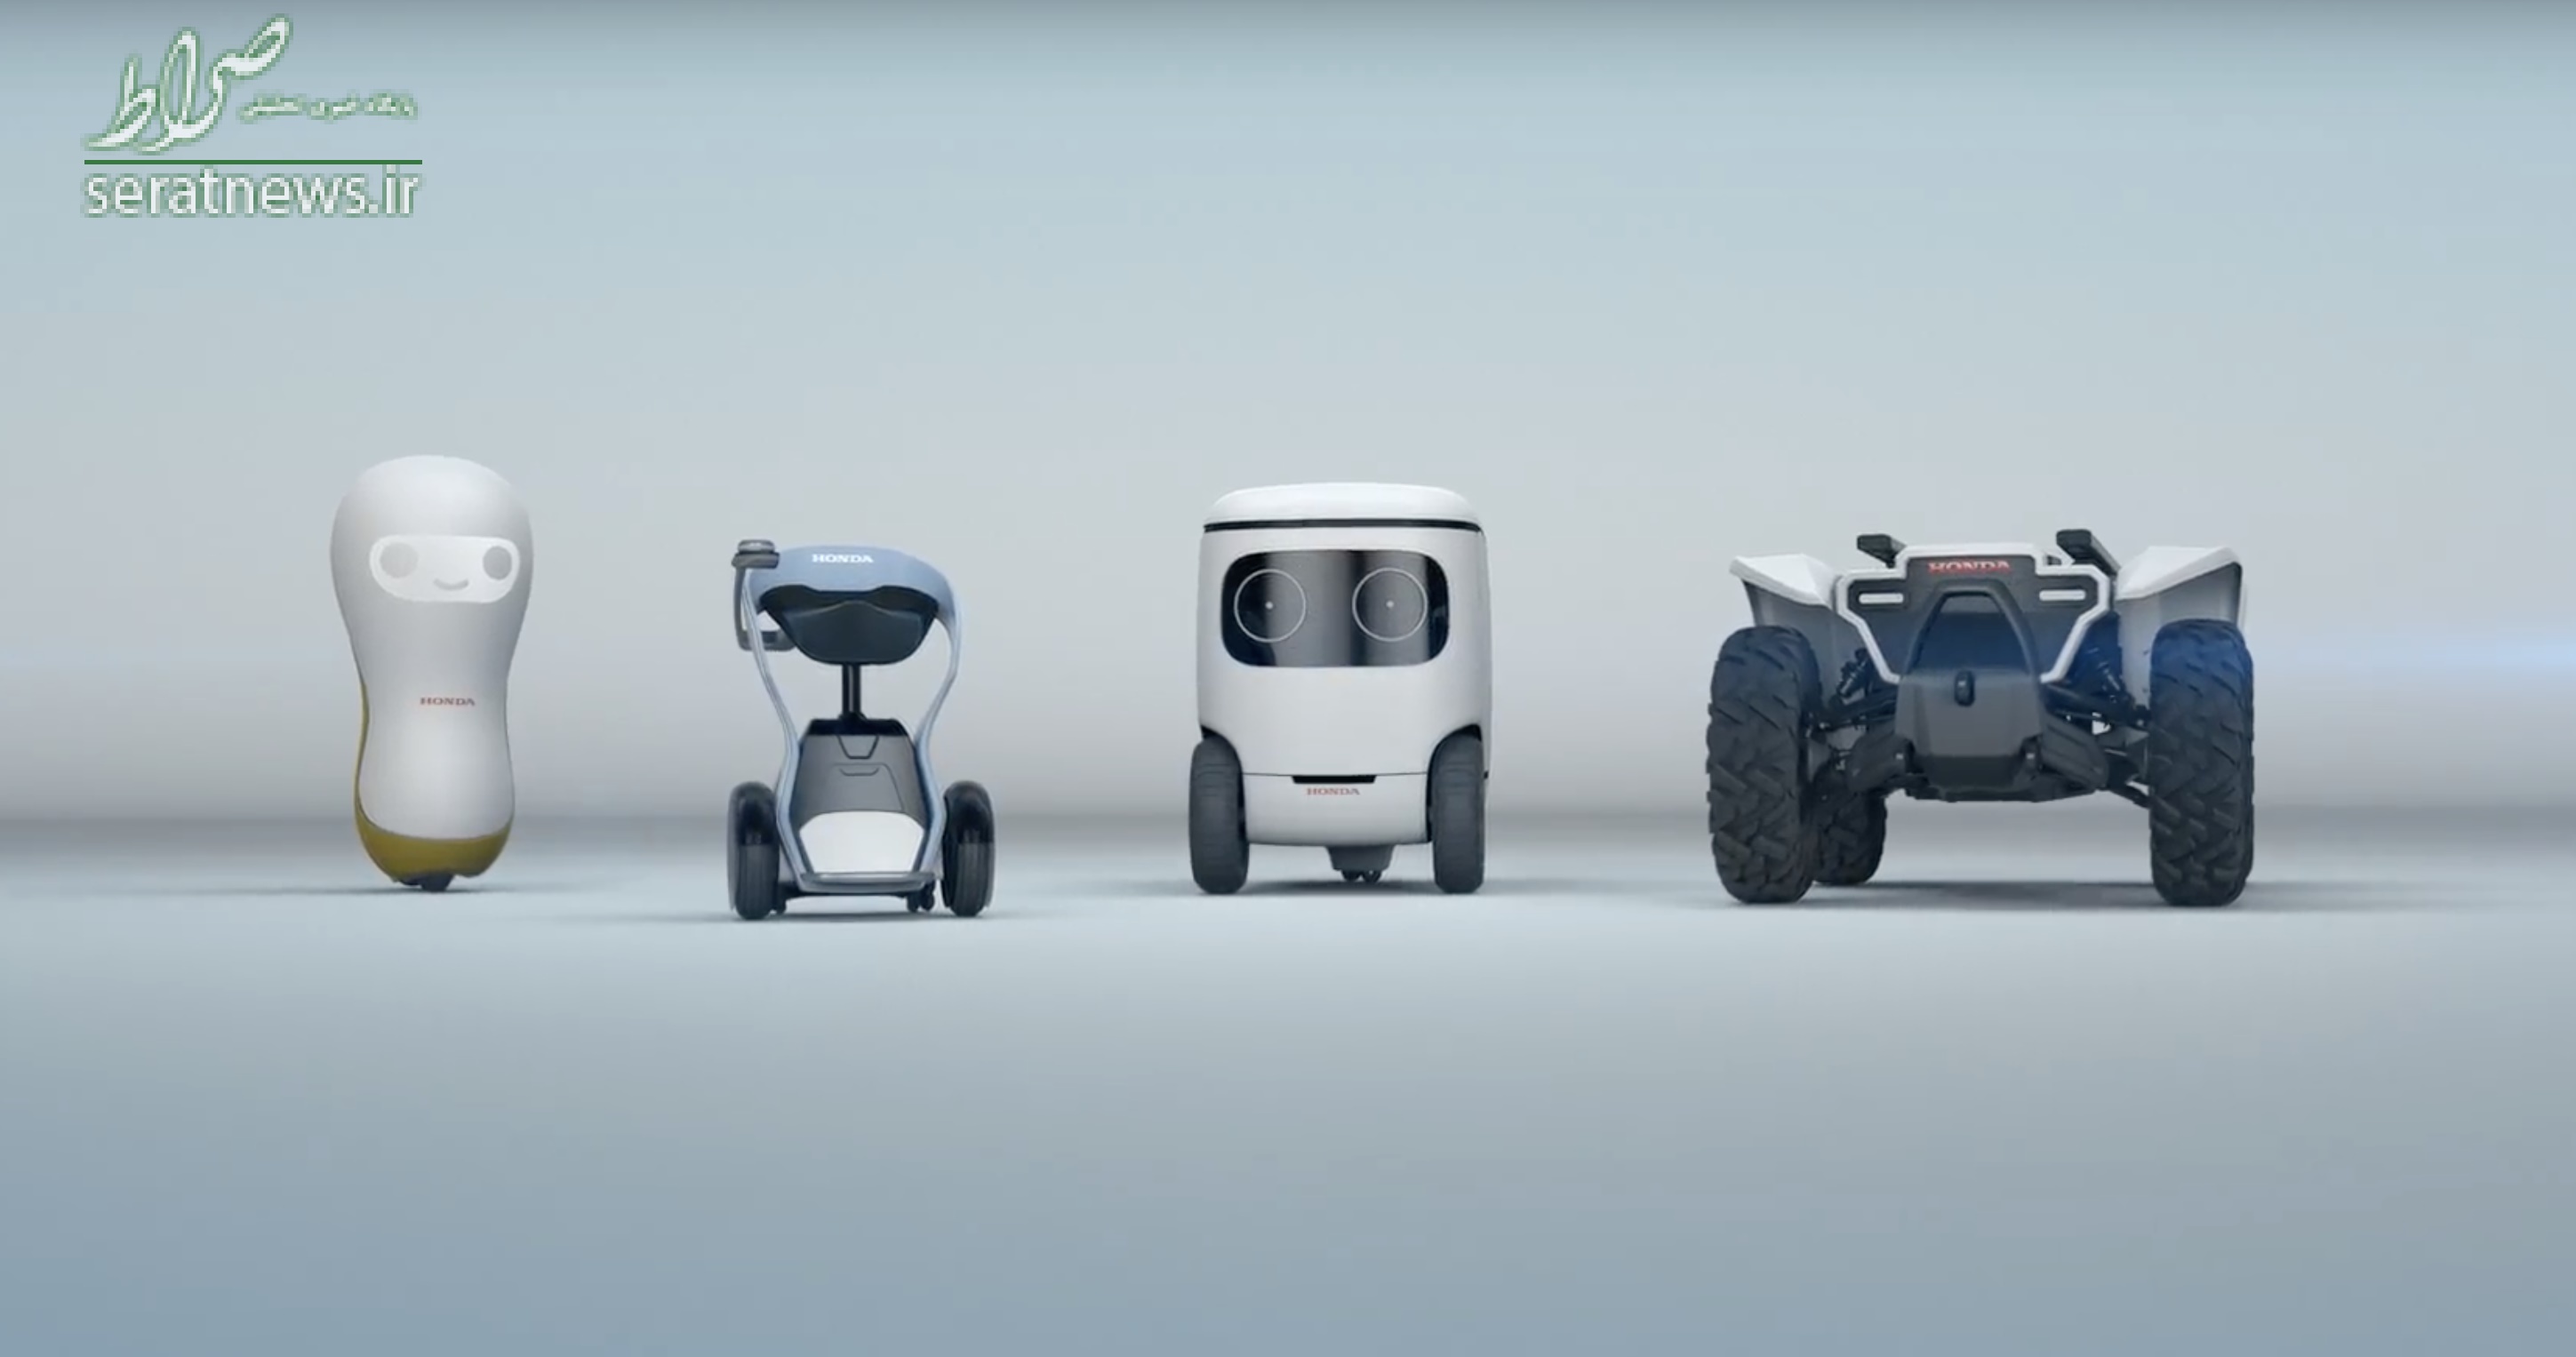 ربات‌های هوندا در نمایشگاه ۲۰۱۸ محصولات الکترونیکی لاس وگاس +عکس